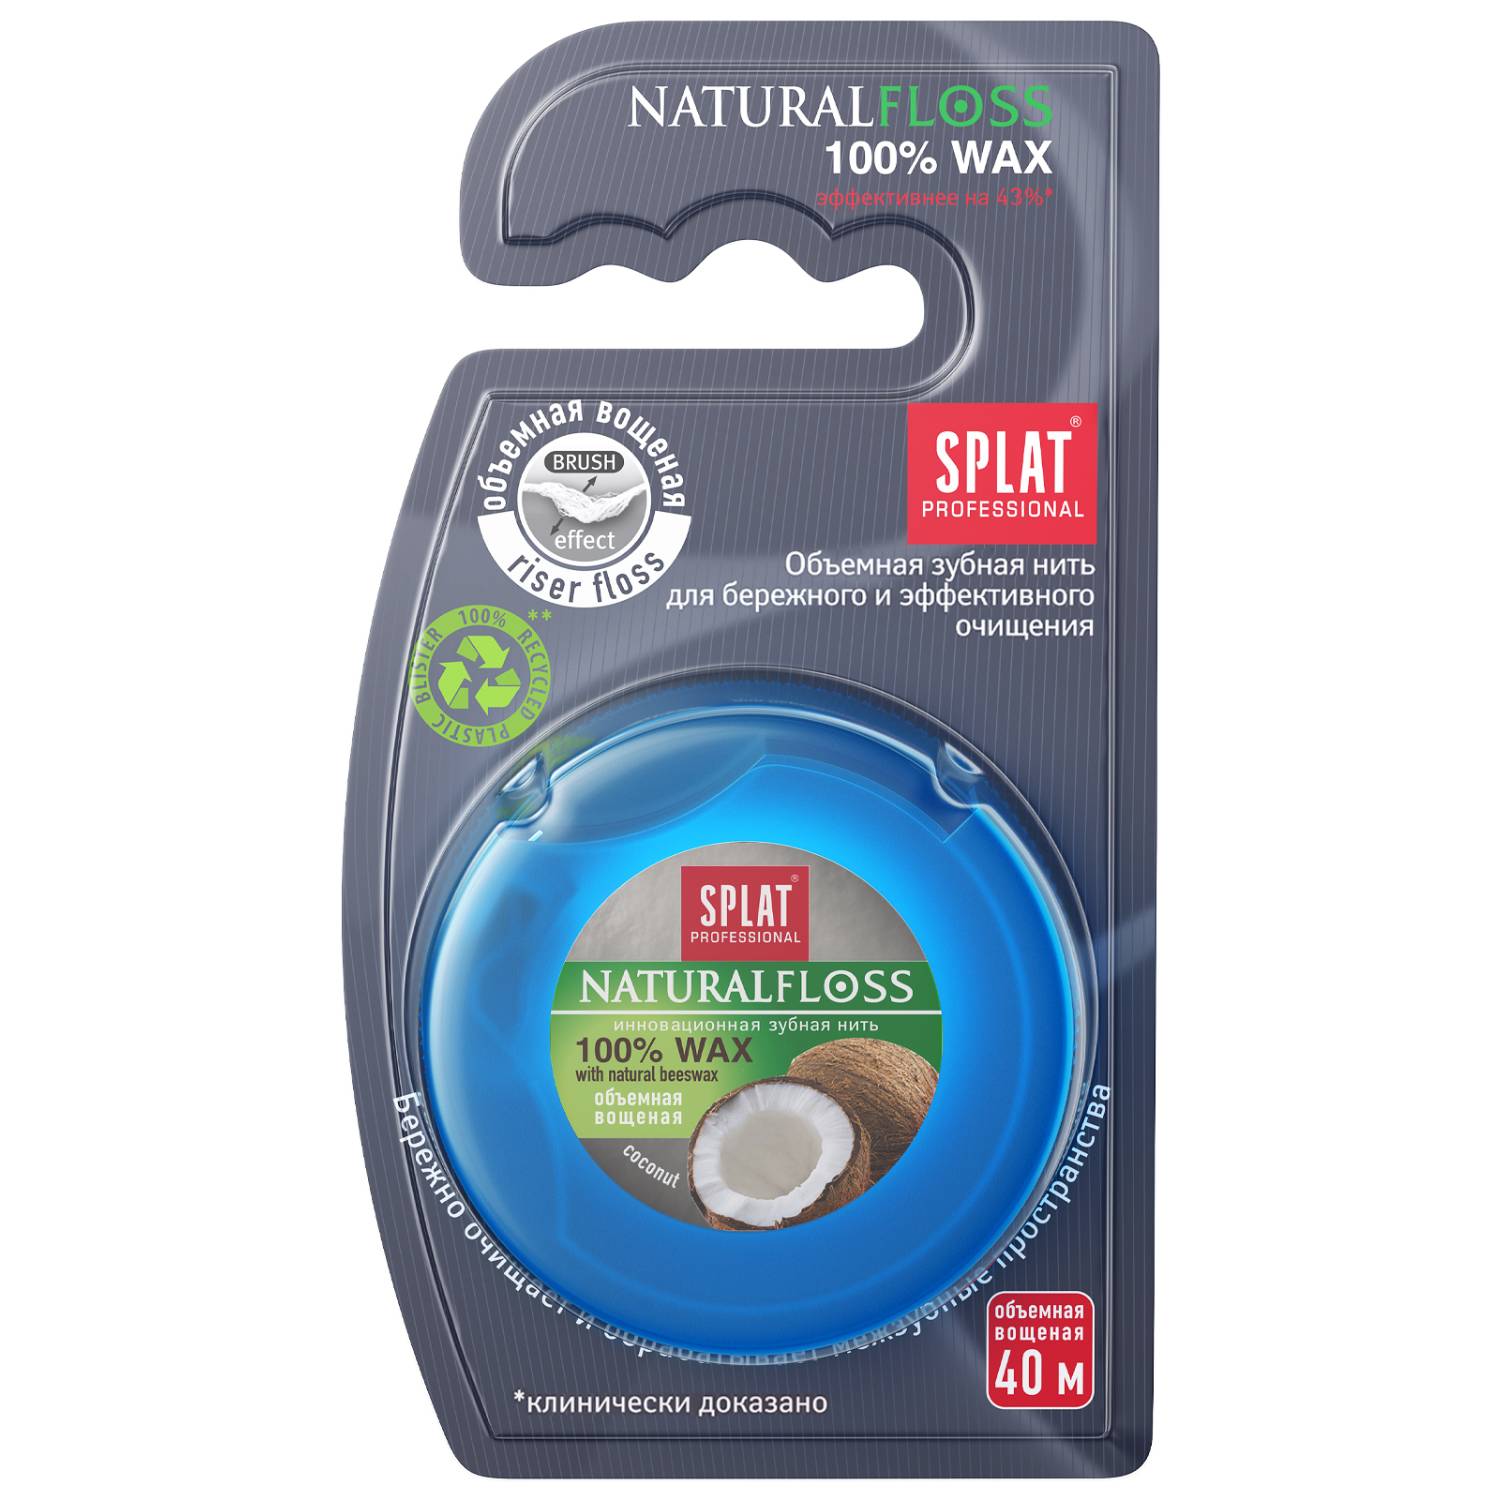 Splat Объемная зубная нить DentalFloss Natural Wax с ароматом кокоса 14+, 40 м (Splat, Professional)